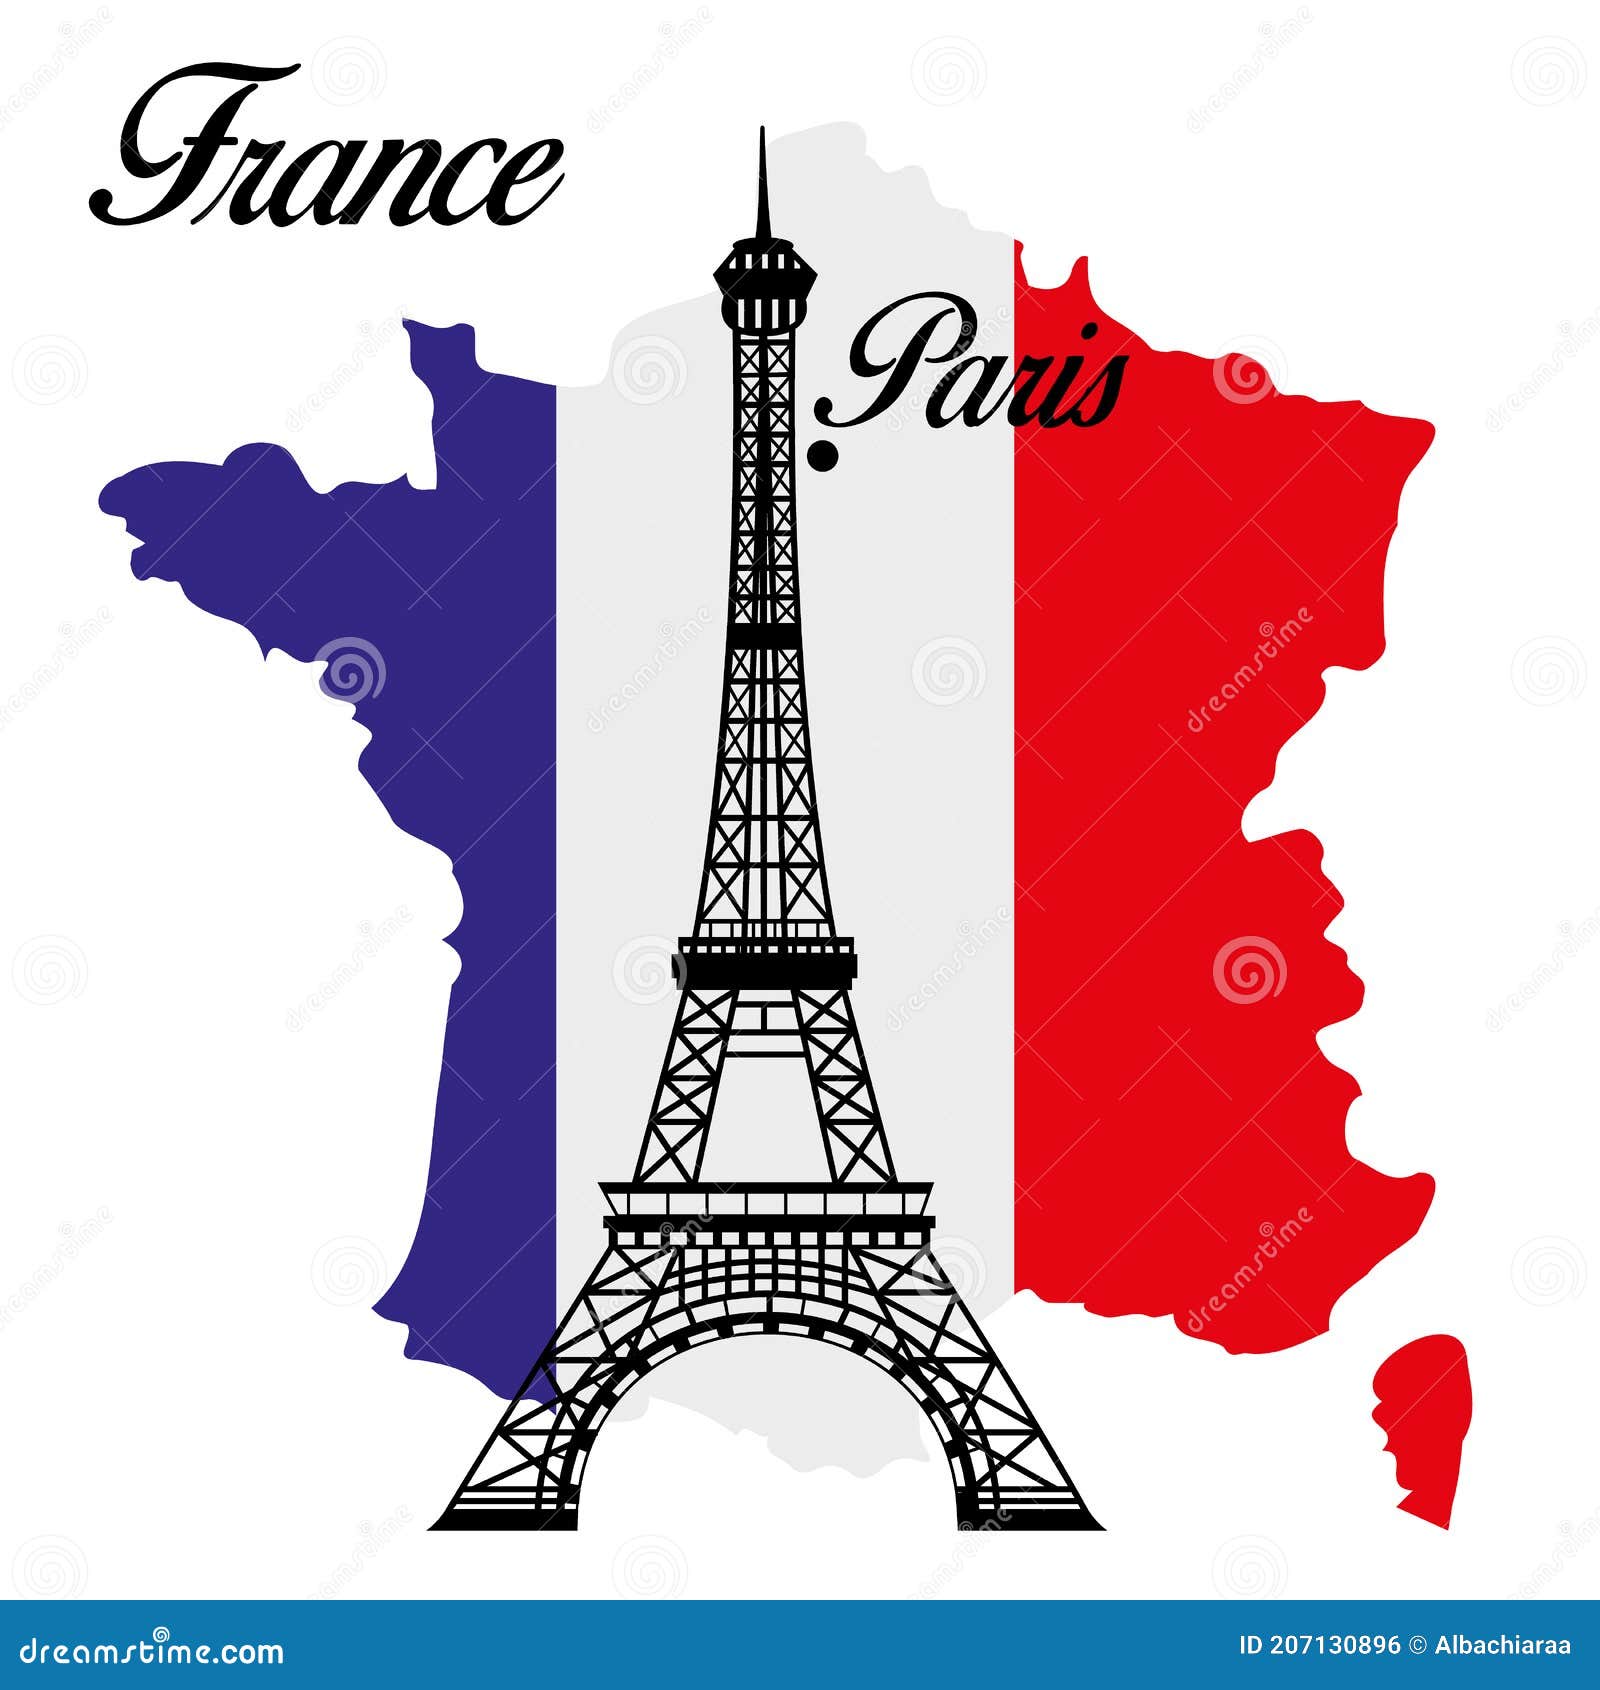 A symbol of paris. Эмблема Франция Париж. Столица Франции Париж с флагом. Столица Парижа флаг. Франция на карте иллюстрация.